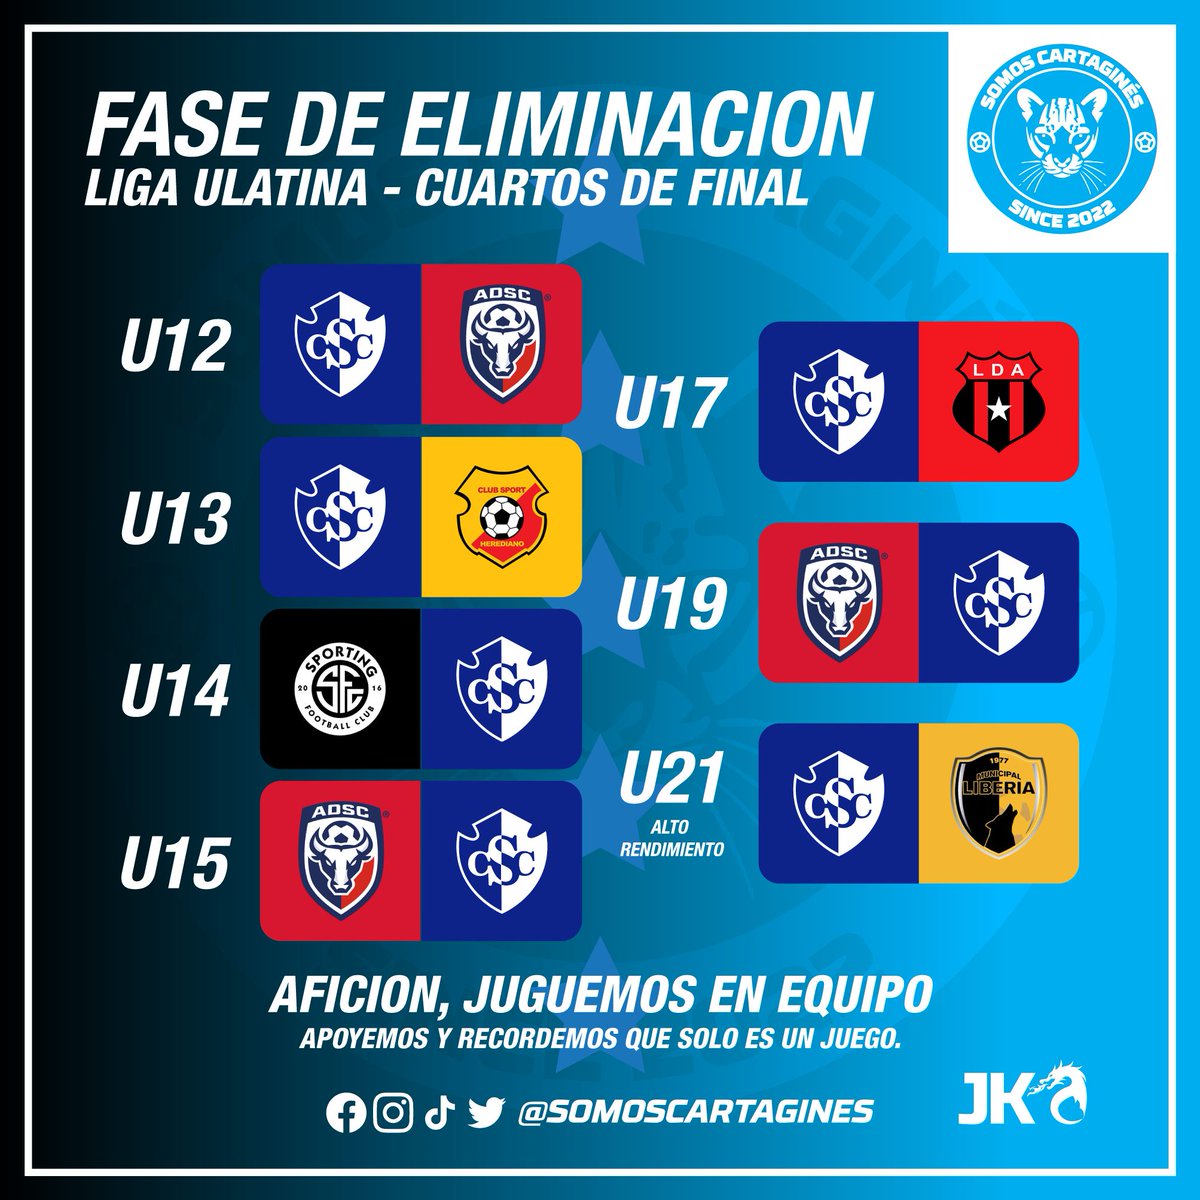 #LigaUlatina
Estos serán los enfrentamiento de las categorías del Club Sport Cartaginés tendrá en estos cuartos de final, los horarios se darán en las últimas horas o días.
#1CSC #VamosCartagines